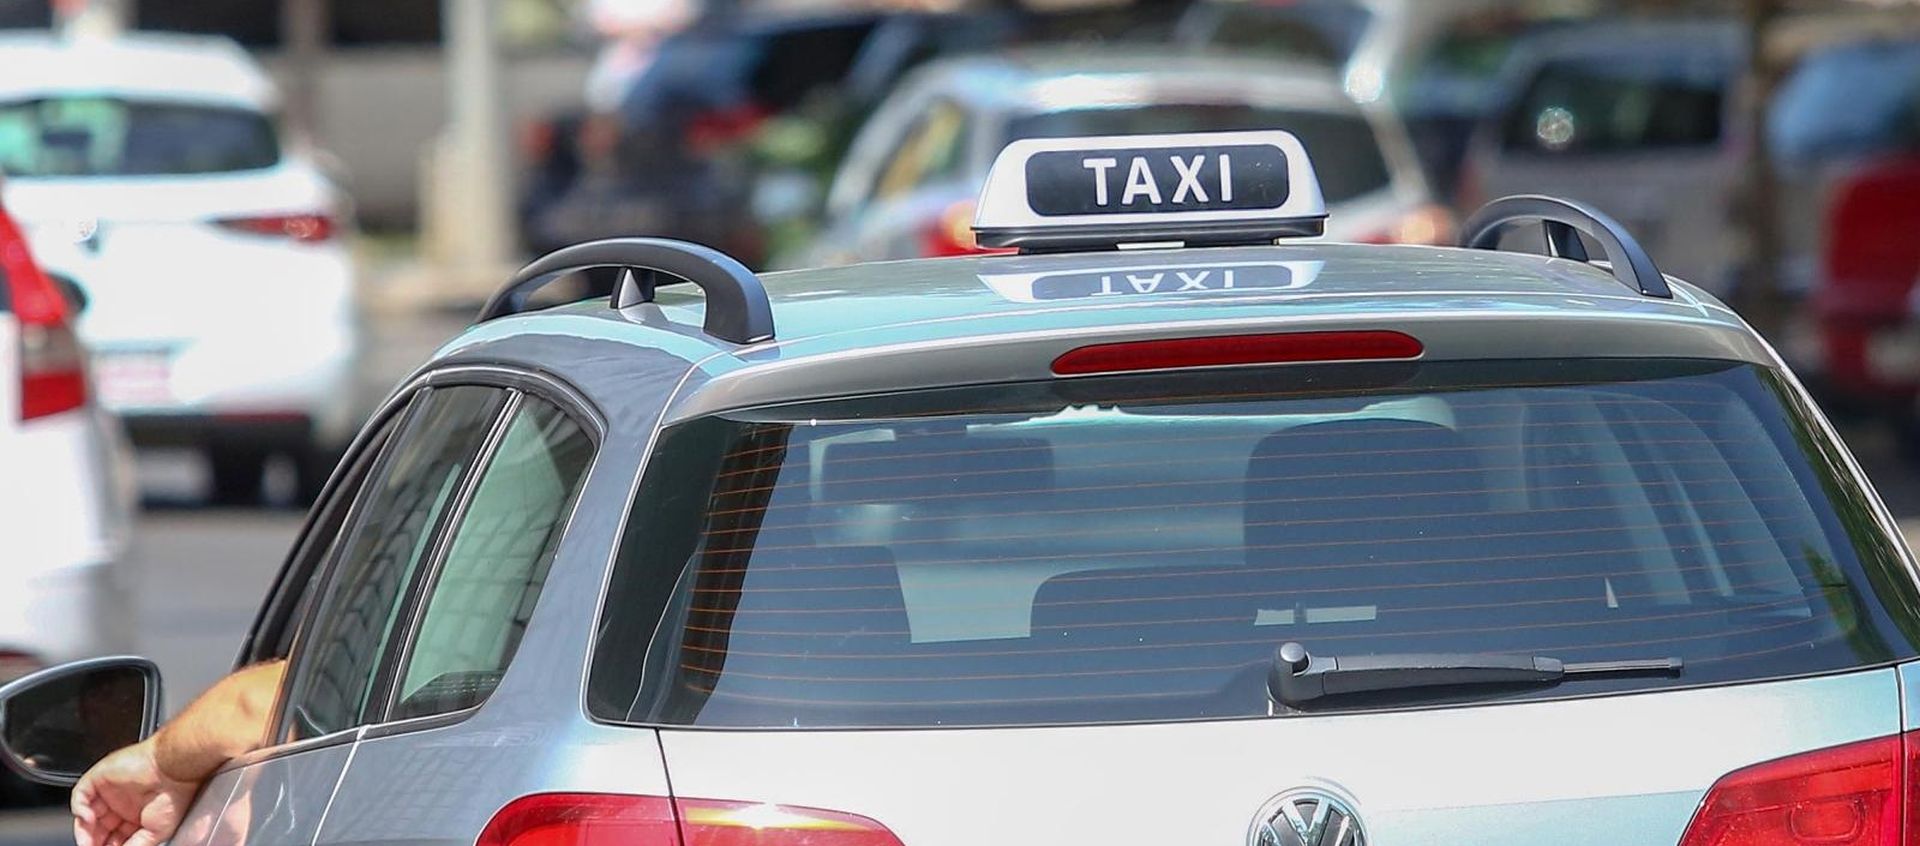 08.06.2018., Zagreb - Vozaci Ubera od 02.06. na svojim automobilima moraju imati taksi oznake kako bi se uskladili s novim Zakonom o cestovnom prometu. Photo: Matija Habljak/PIXSELL